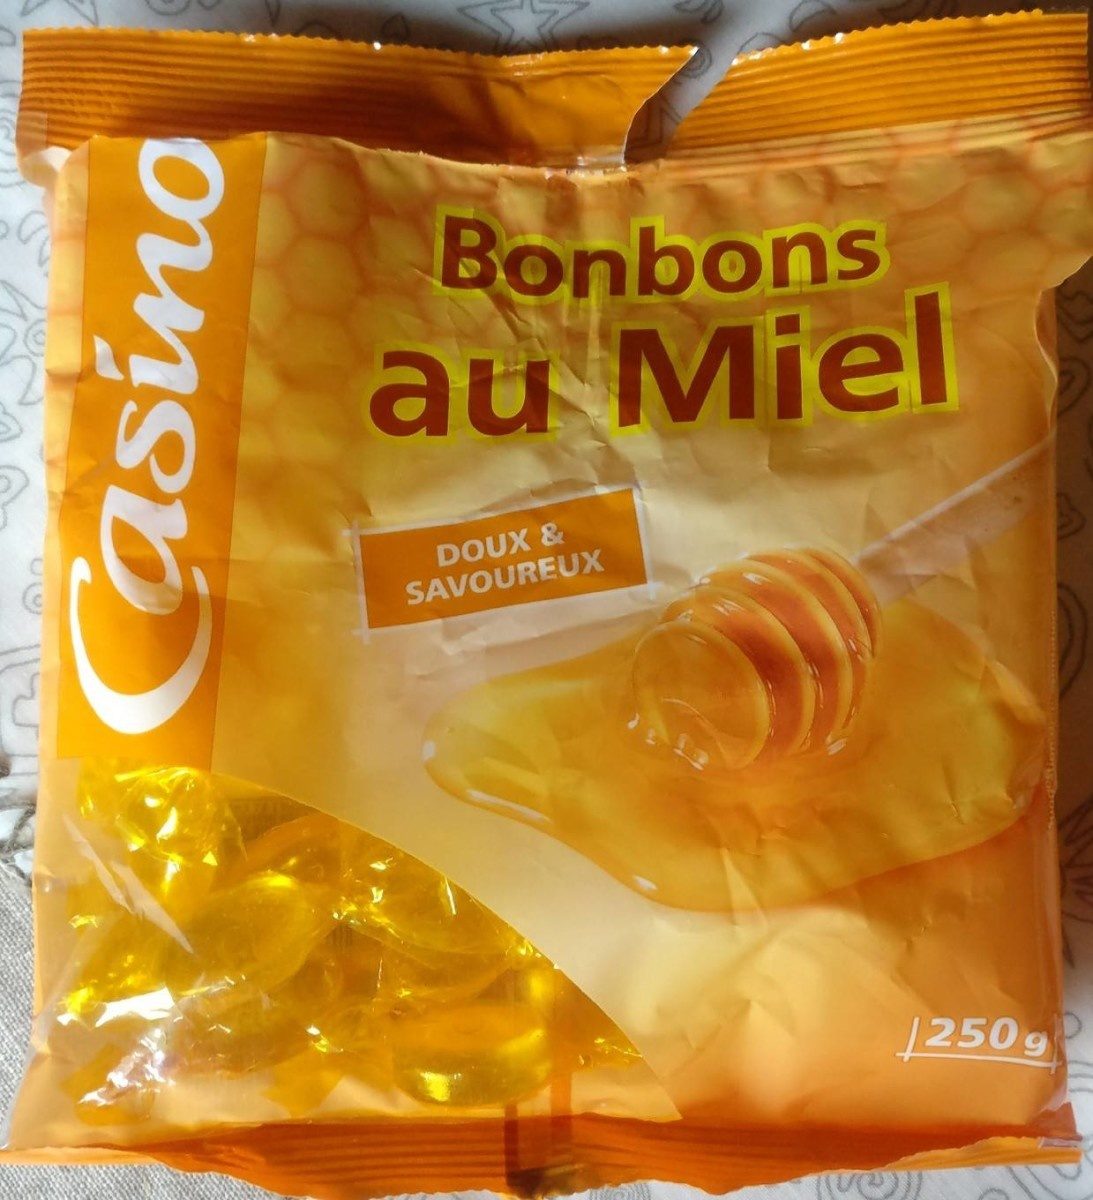 Bonbons au miel - Doux et savoureux - Produit - fr